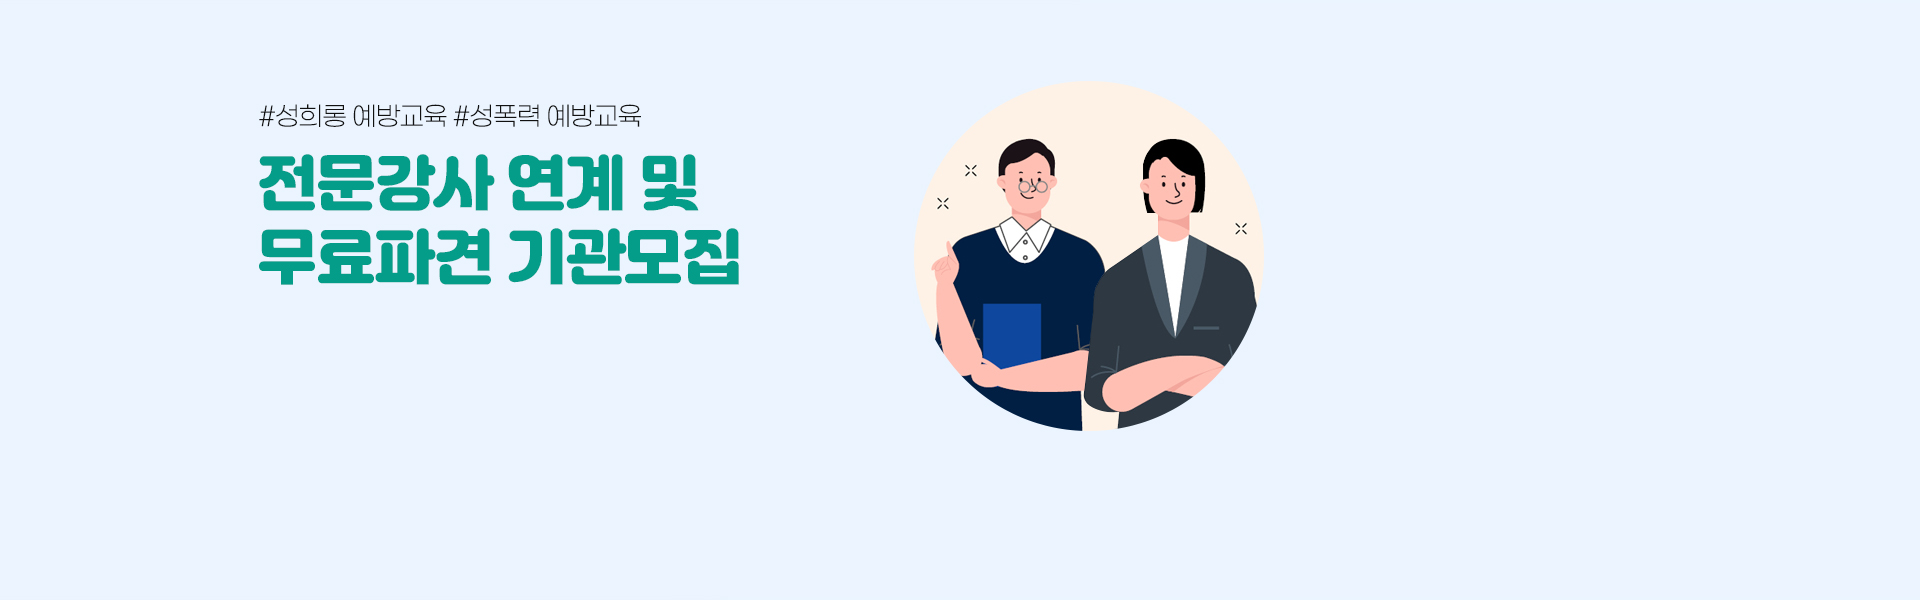 #성희롱 예방교육 #성푝력 예방교육 전문강사 연계 및 무료파견 기관 모집